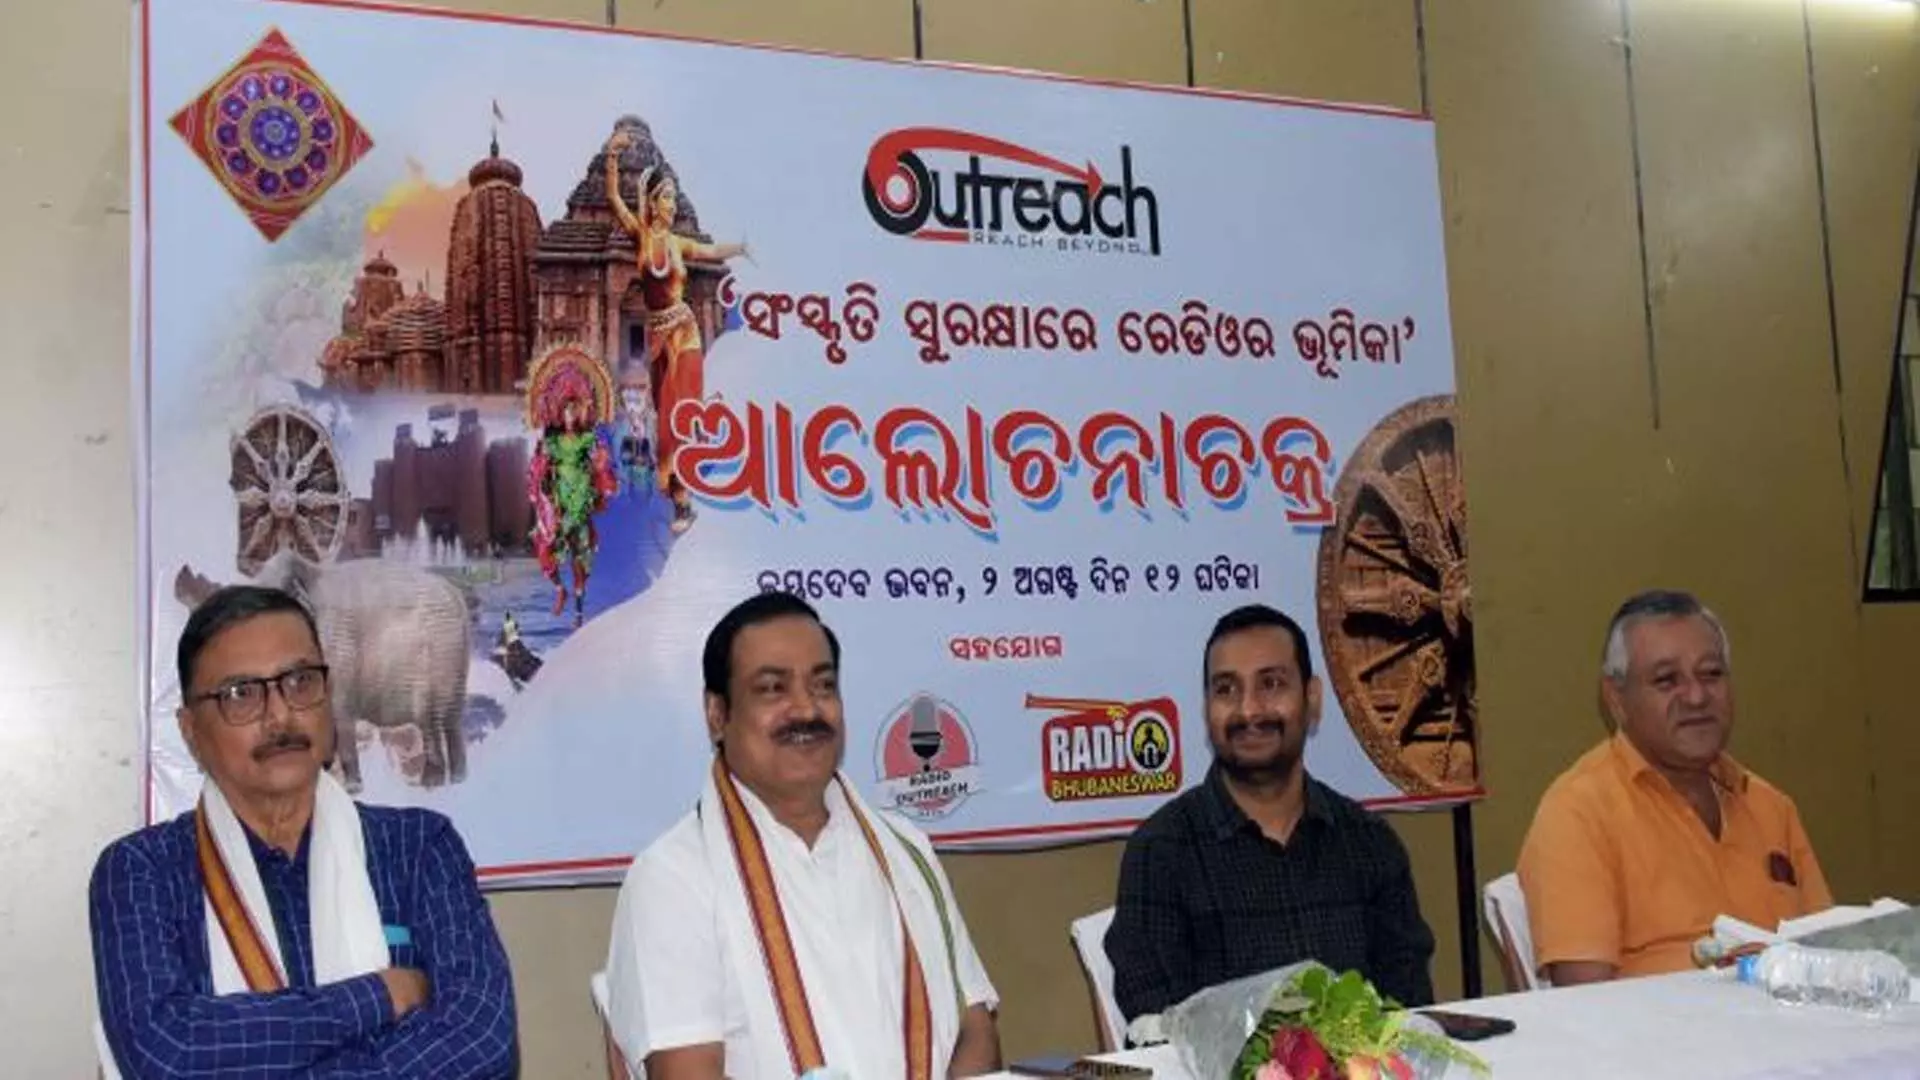 Acharya: सामुदायिक रेडियो ओड़िया परंपराओं को बढ़ावा दे रहा